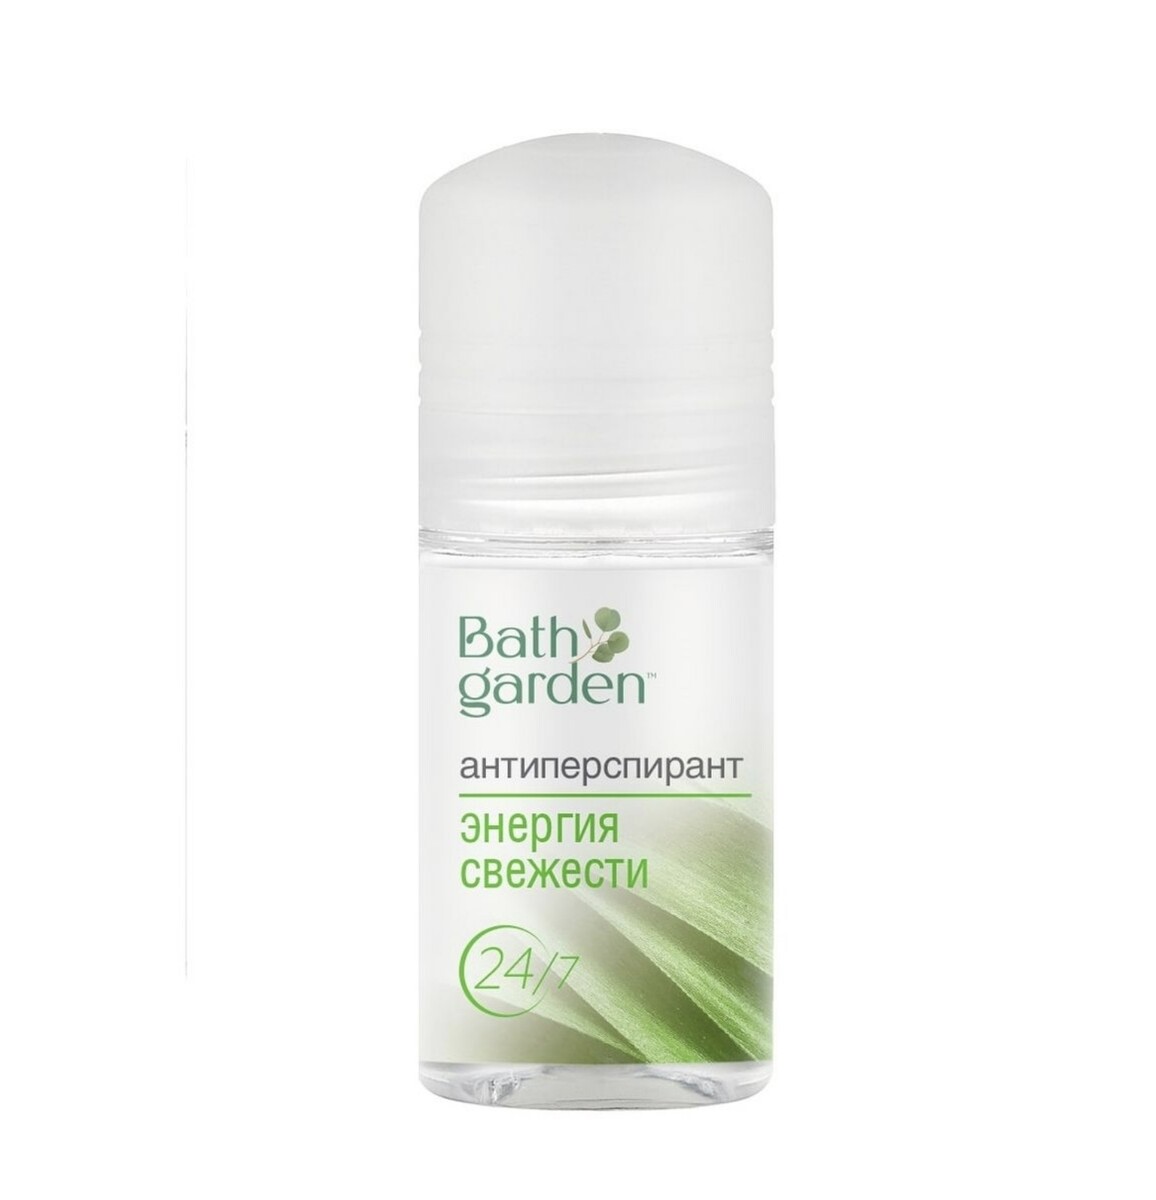 Bath garden дезодорант-антиперспирант энергия свежести, 50мл энергия вертикали